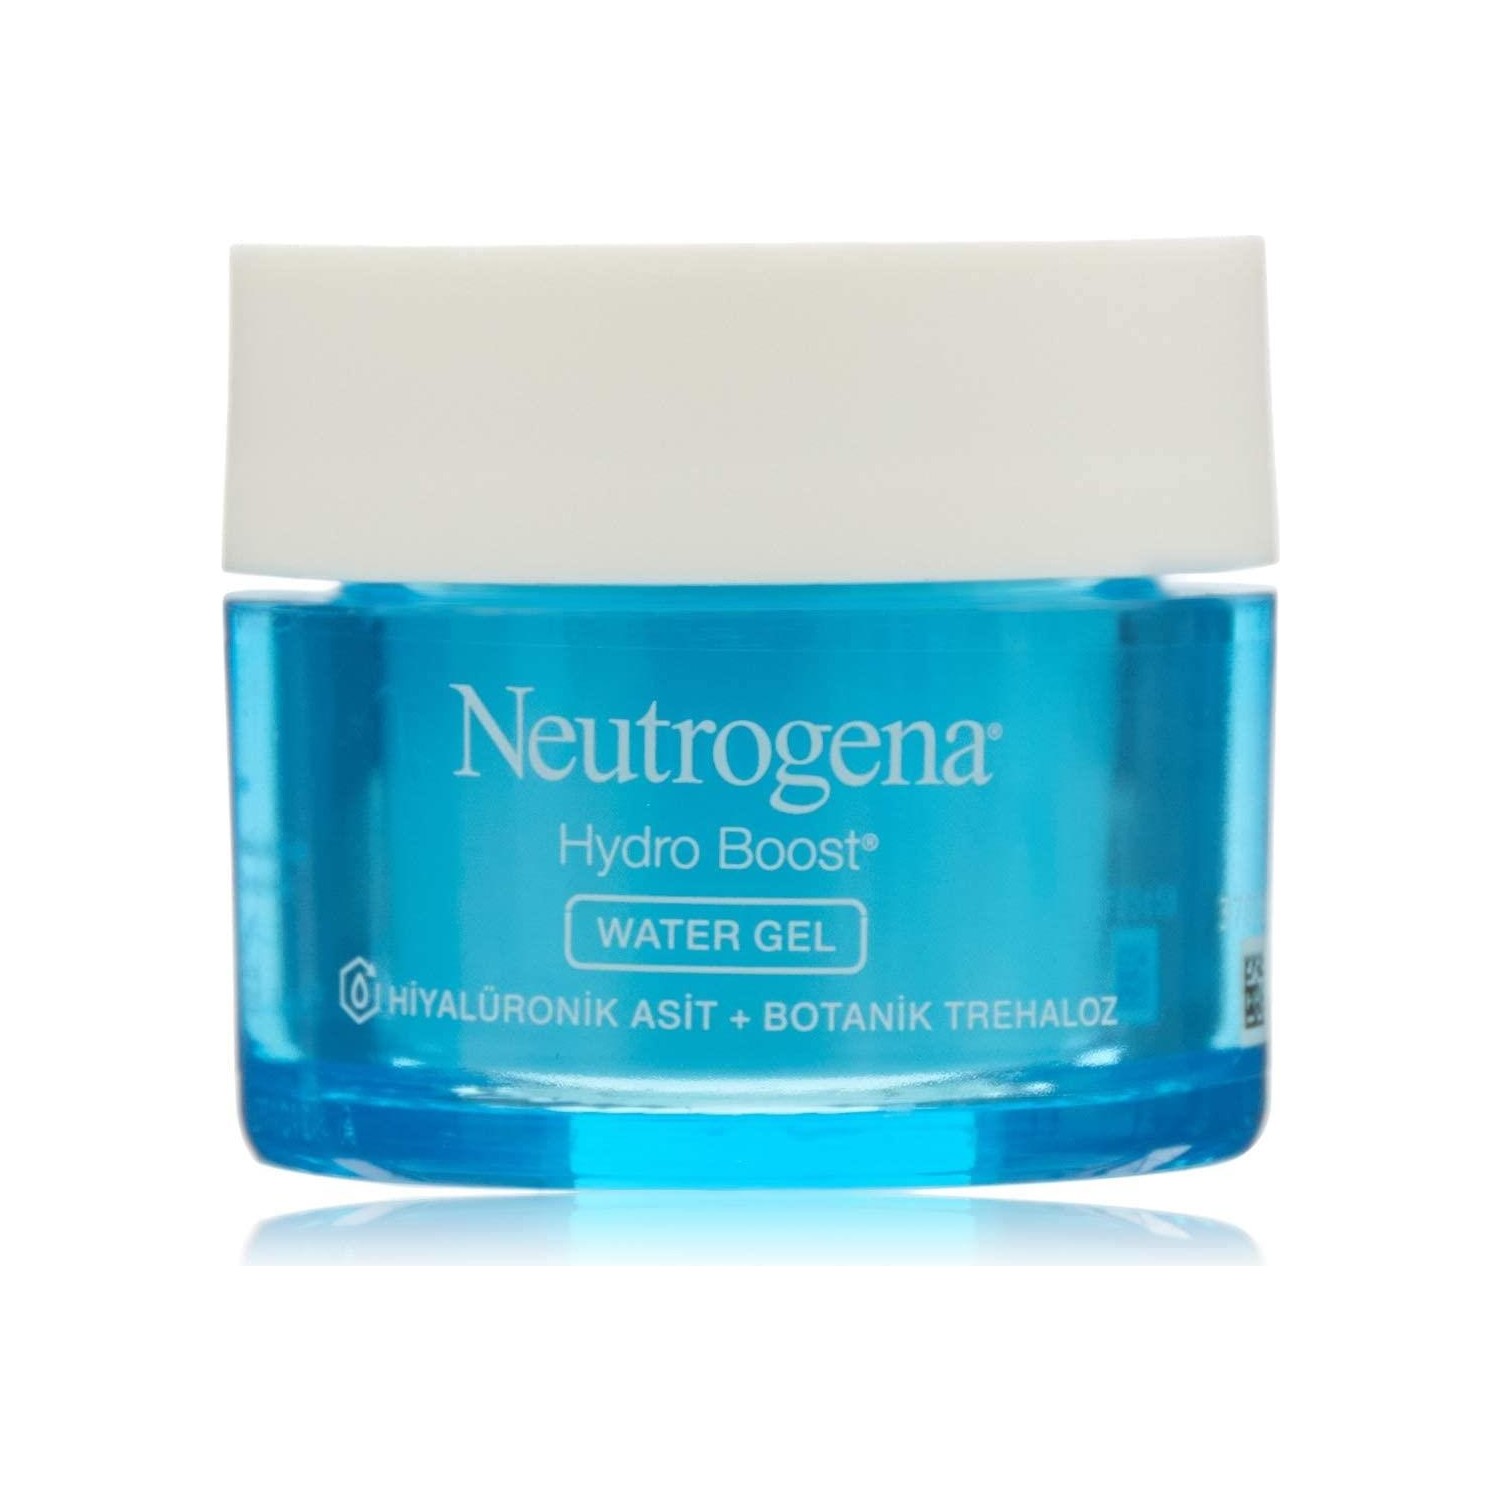 Гель увлажняющий Neutrogena Hydro Boost Water Gel для нормальной кожи, 50 мл крем увлажняющий neutrogena hydro boost water gel для нормальной кожи 2 упаковки по 50 мл